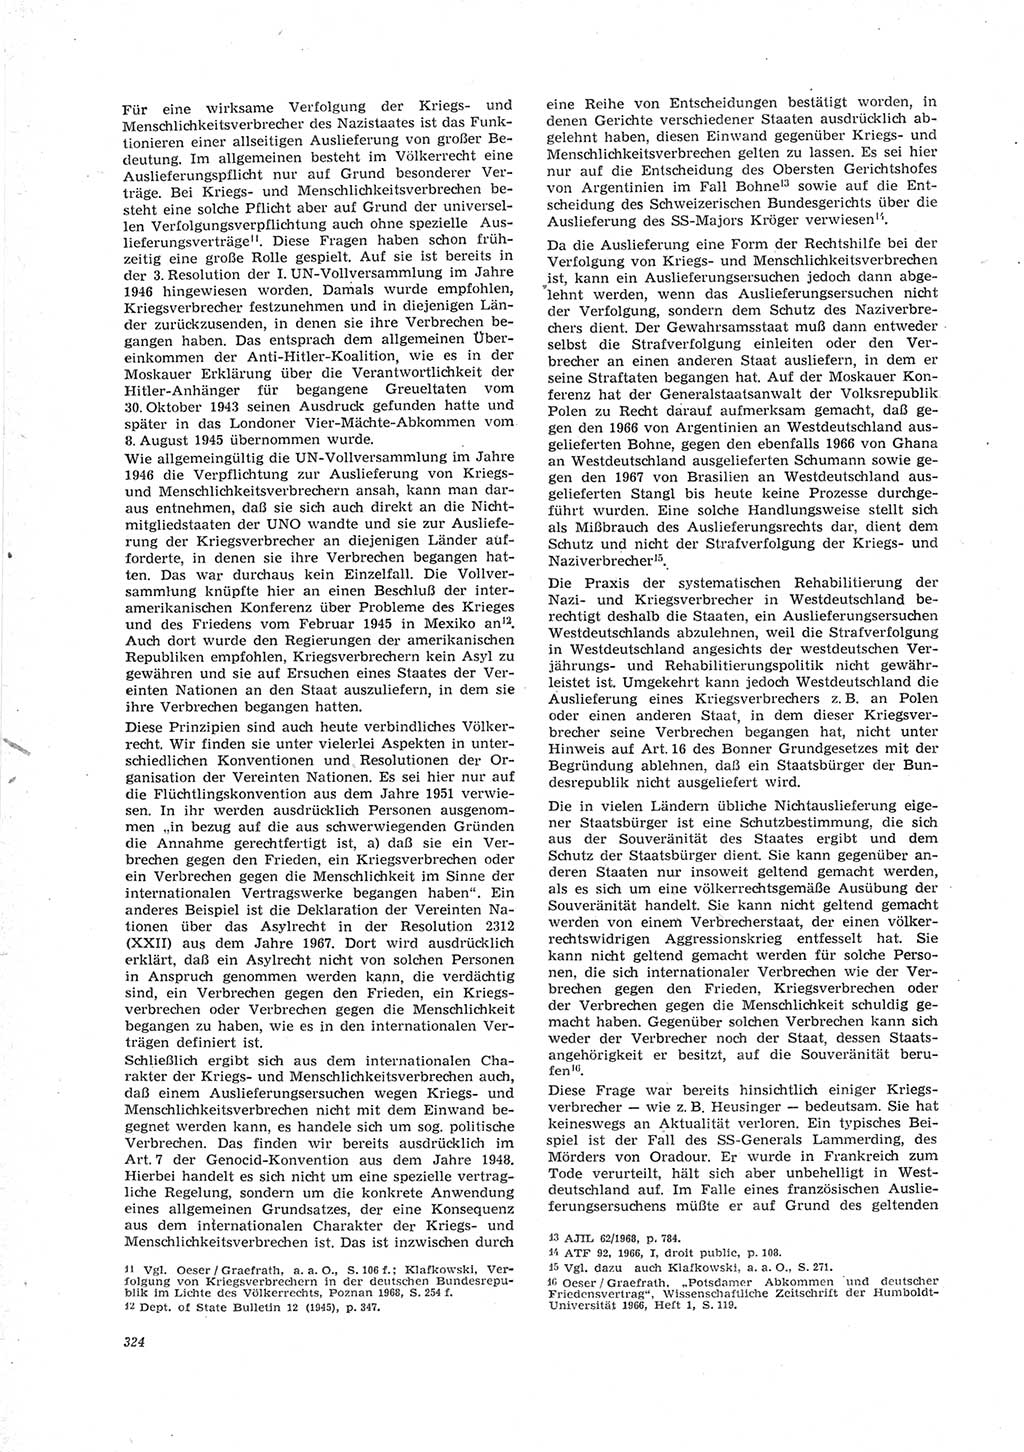 Neue Justiz (NJ), Zeitschrift für Recht und Rechtswissenschaft [Deutsche Demokratische Republik (DDR)], 23. Jahrgang 1969, Seite 324 (NJ DDR 1969, S. 324)